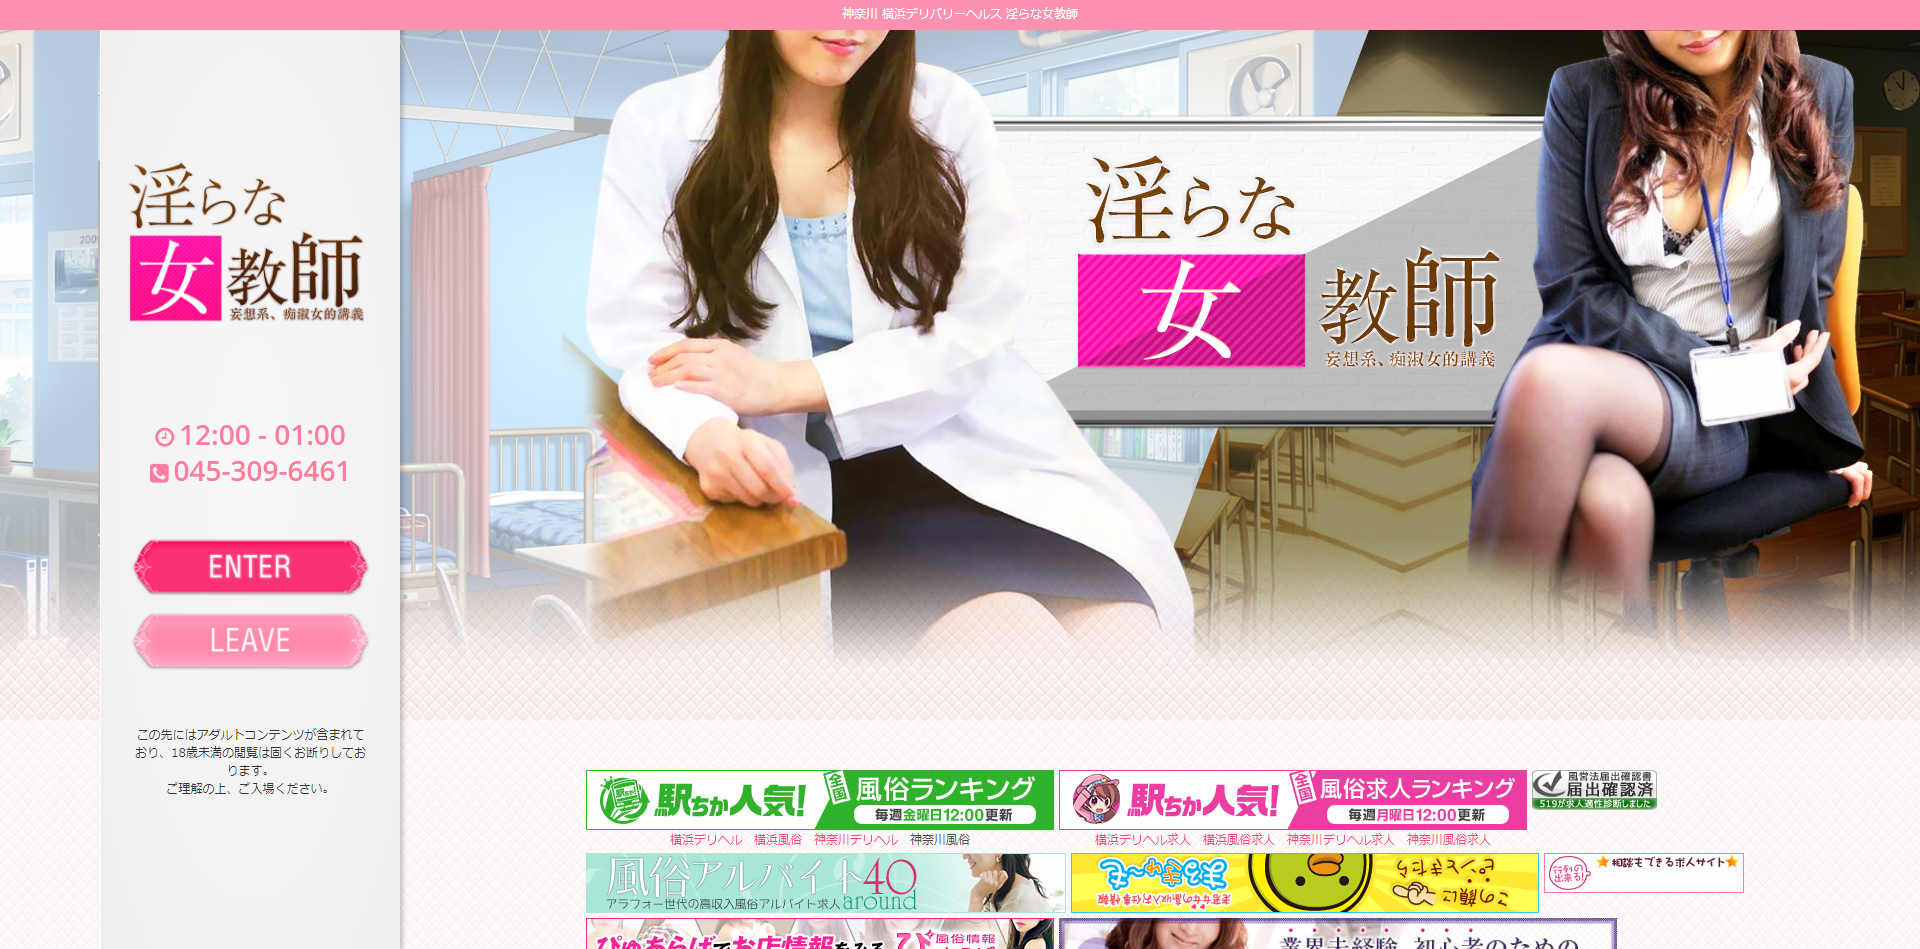 横浜・川崎のデリヘル淫らな女教師のホームページ画像